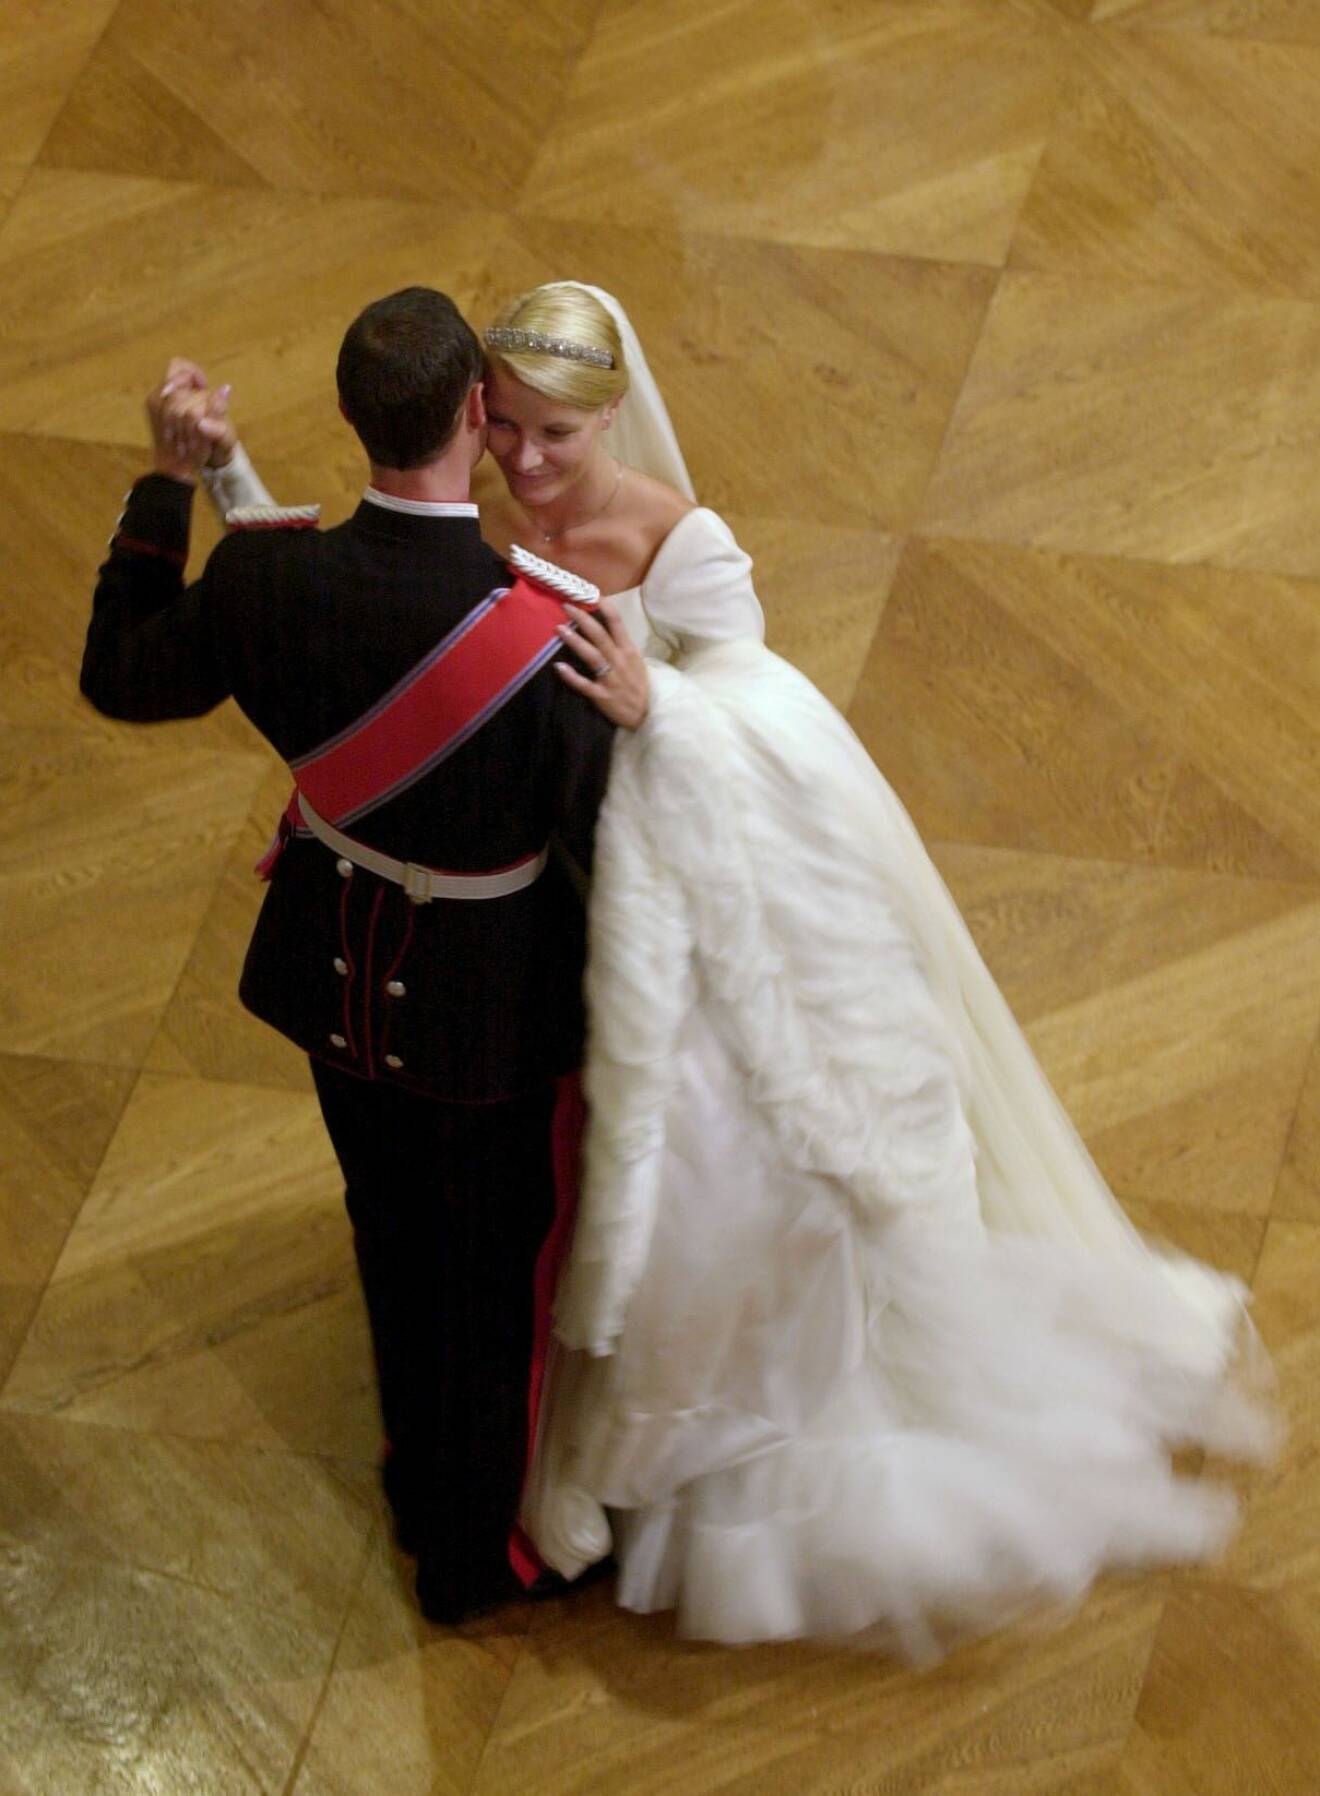 Kronprinsesssan Mette-Marit och kronprins Haakon på dansgolvet under sin bröllopsvals 2001